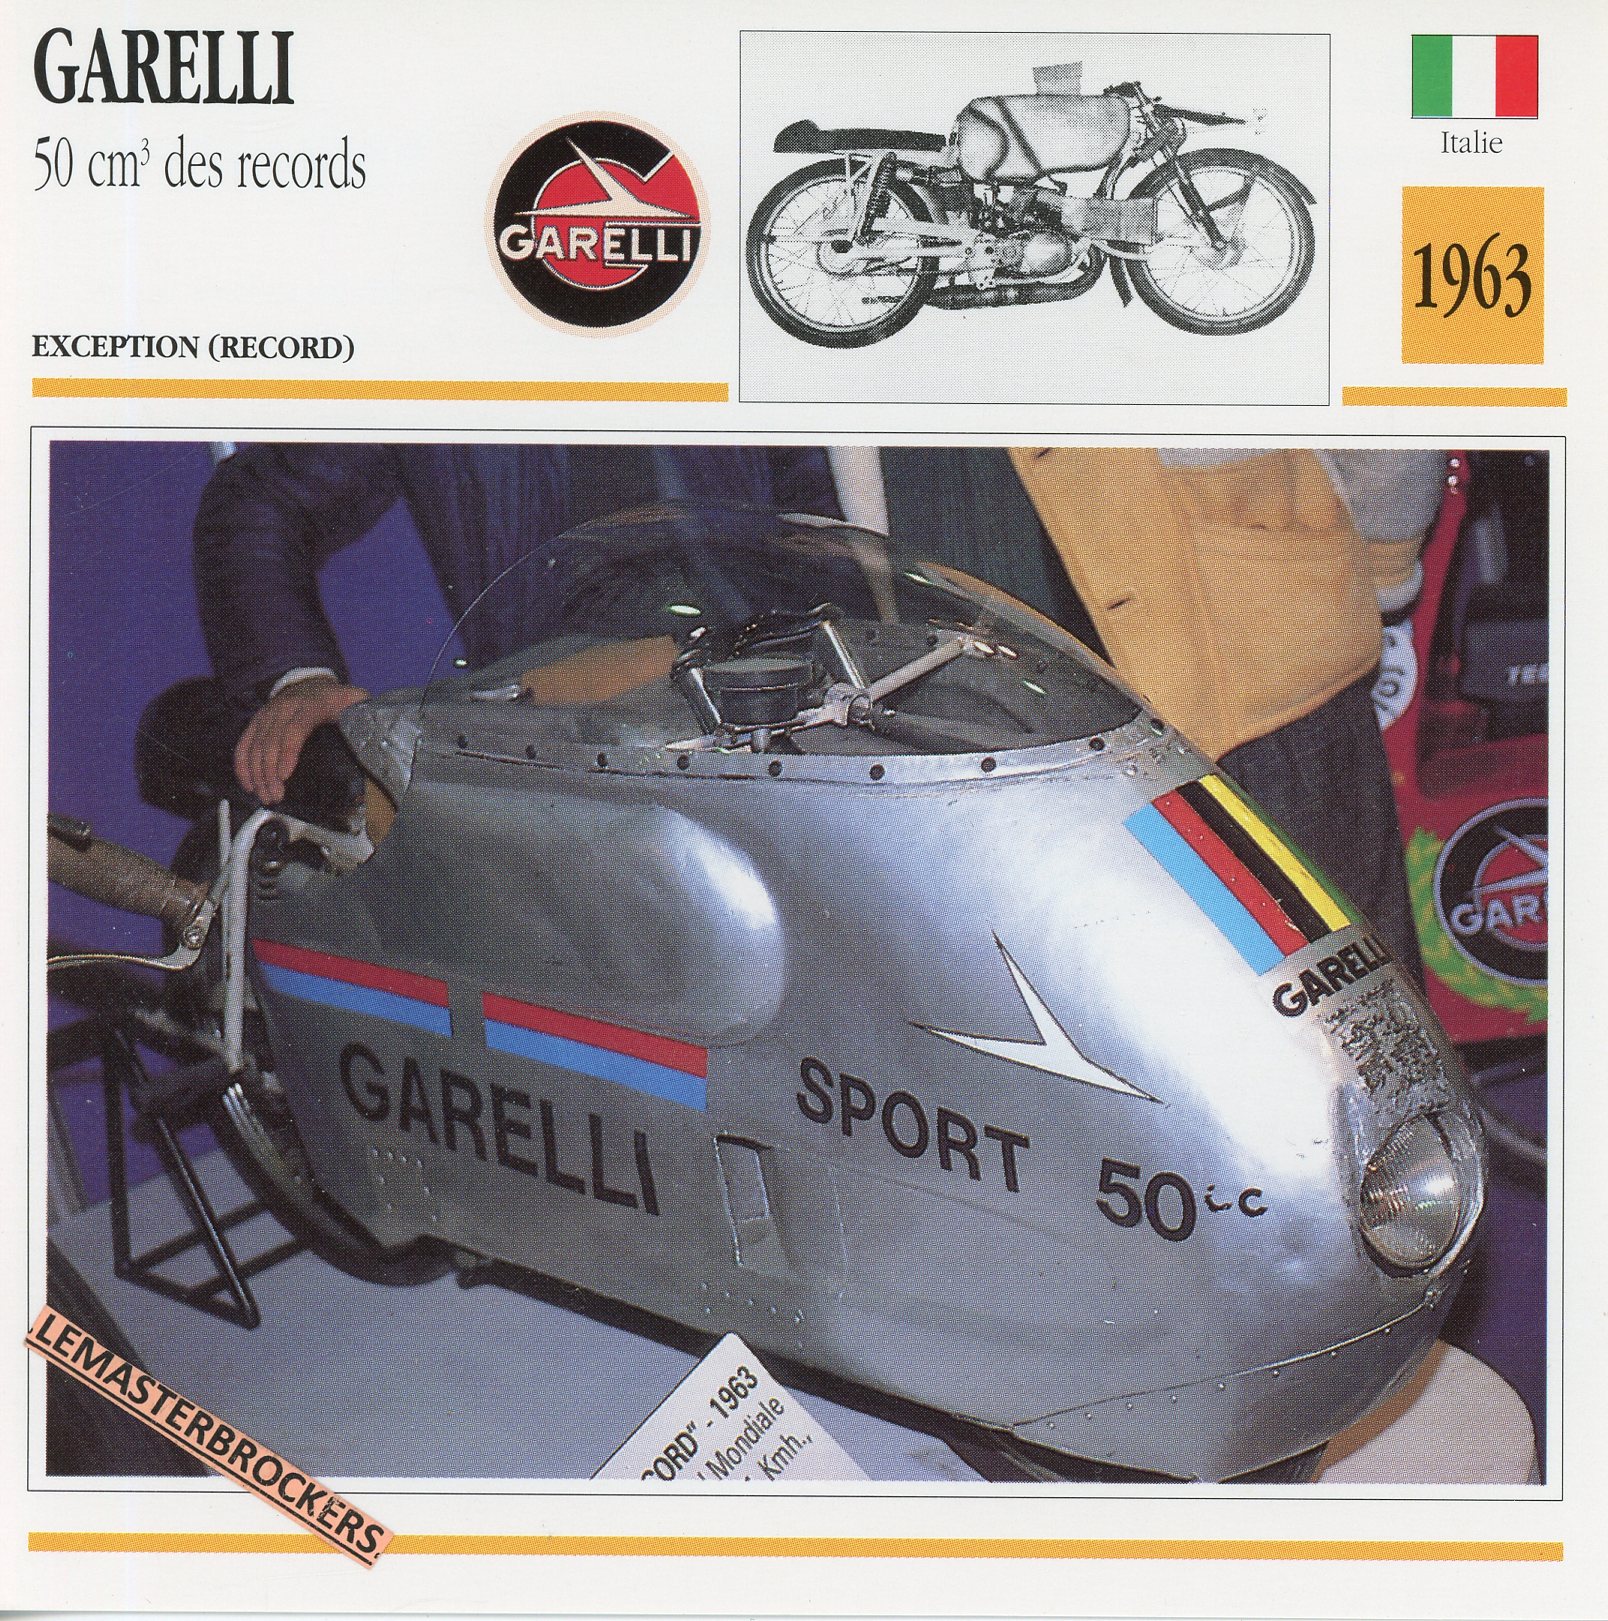 GARELLI-50-DES-RECORDS-1963-FICHE-MOTO-MOTORCYCLE-CARDS-ATLAS-LEMASTERBROCKERS